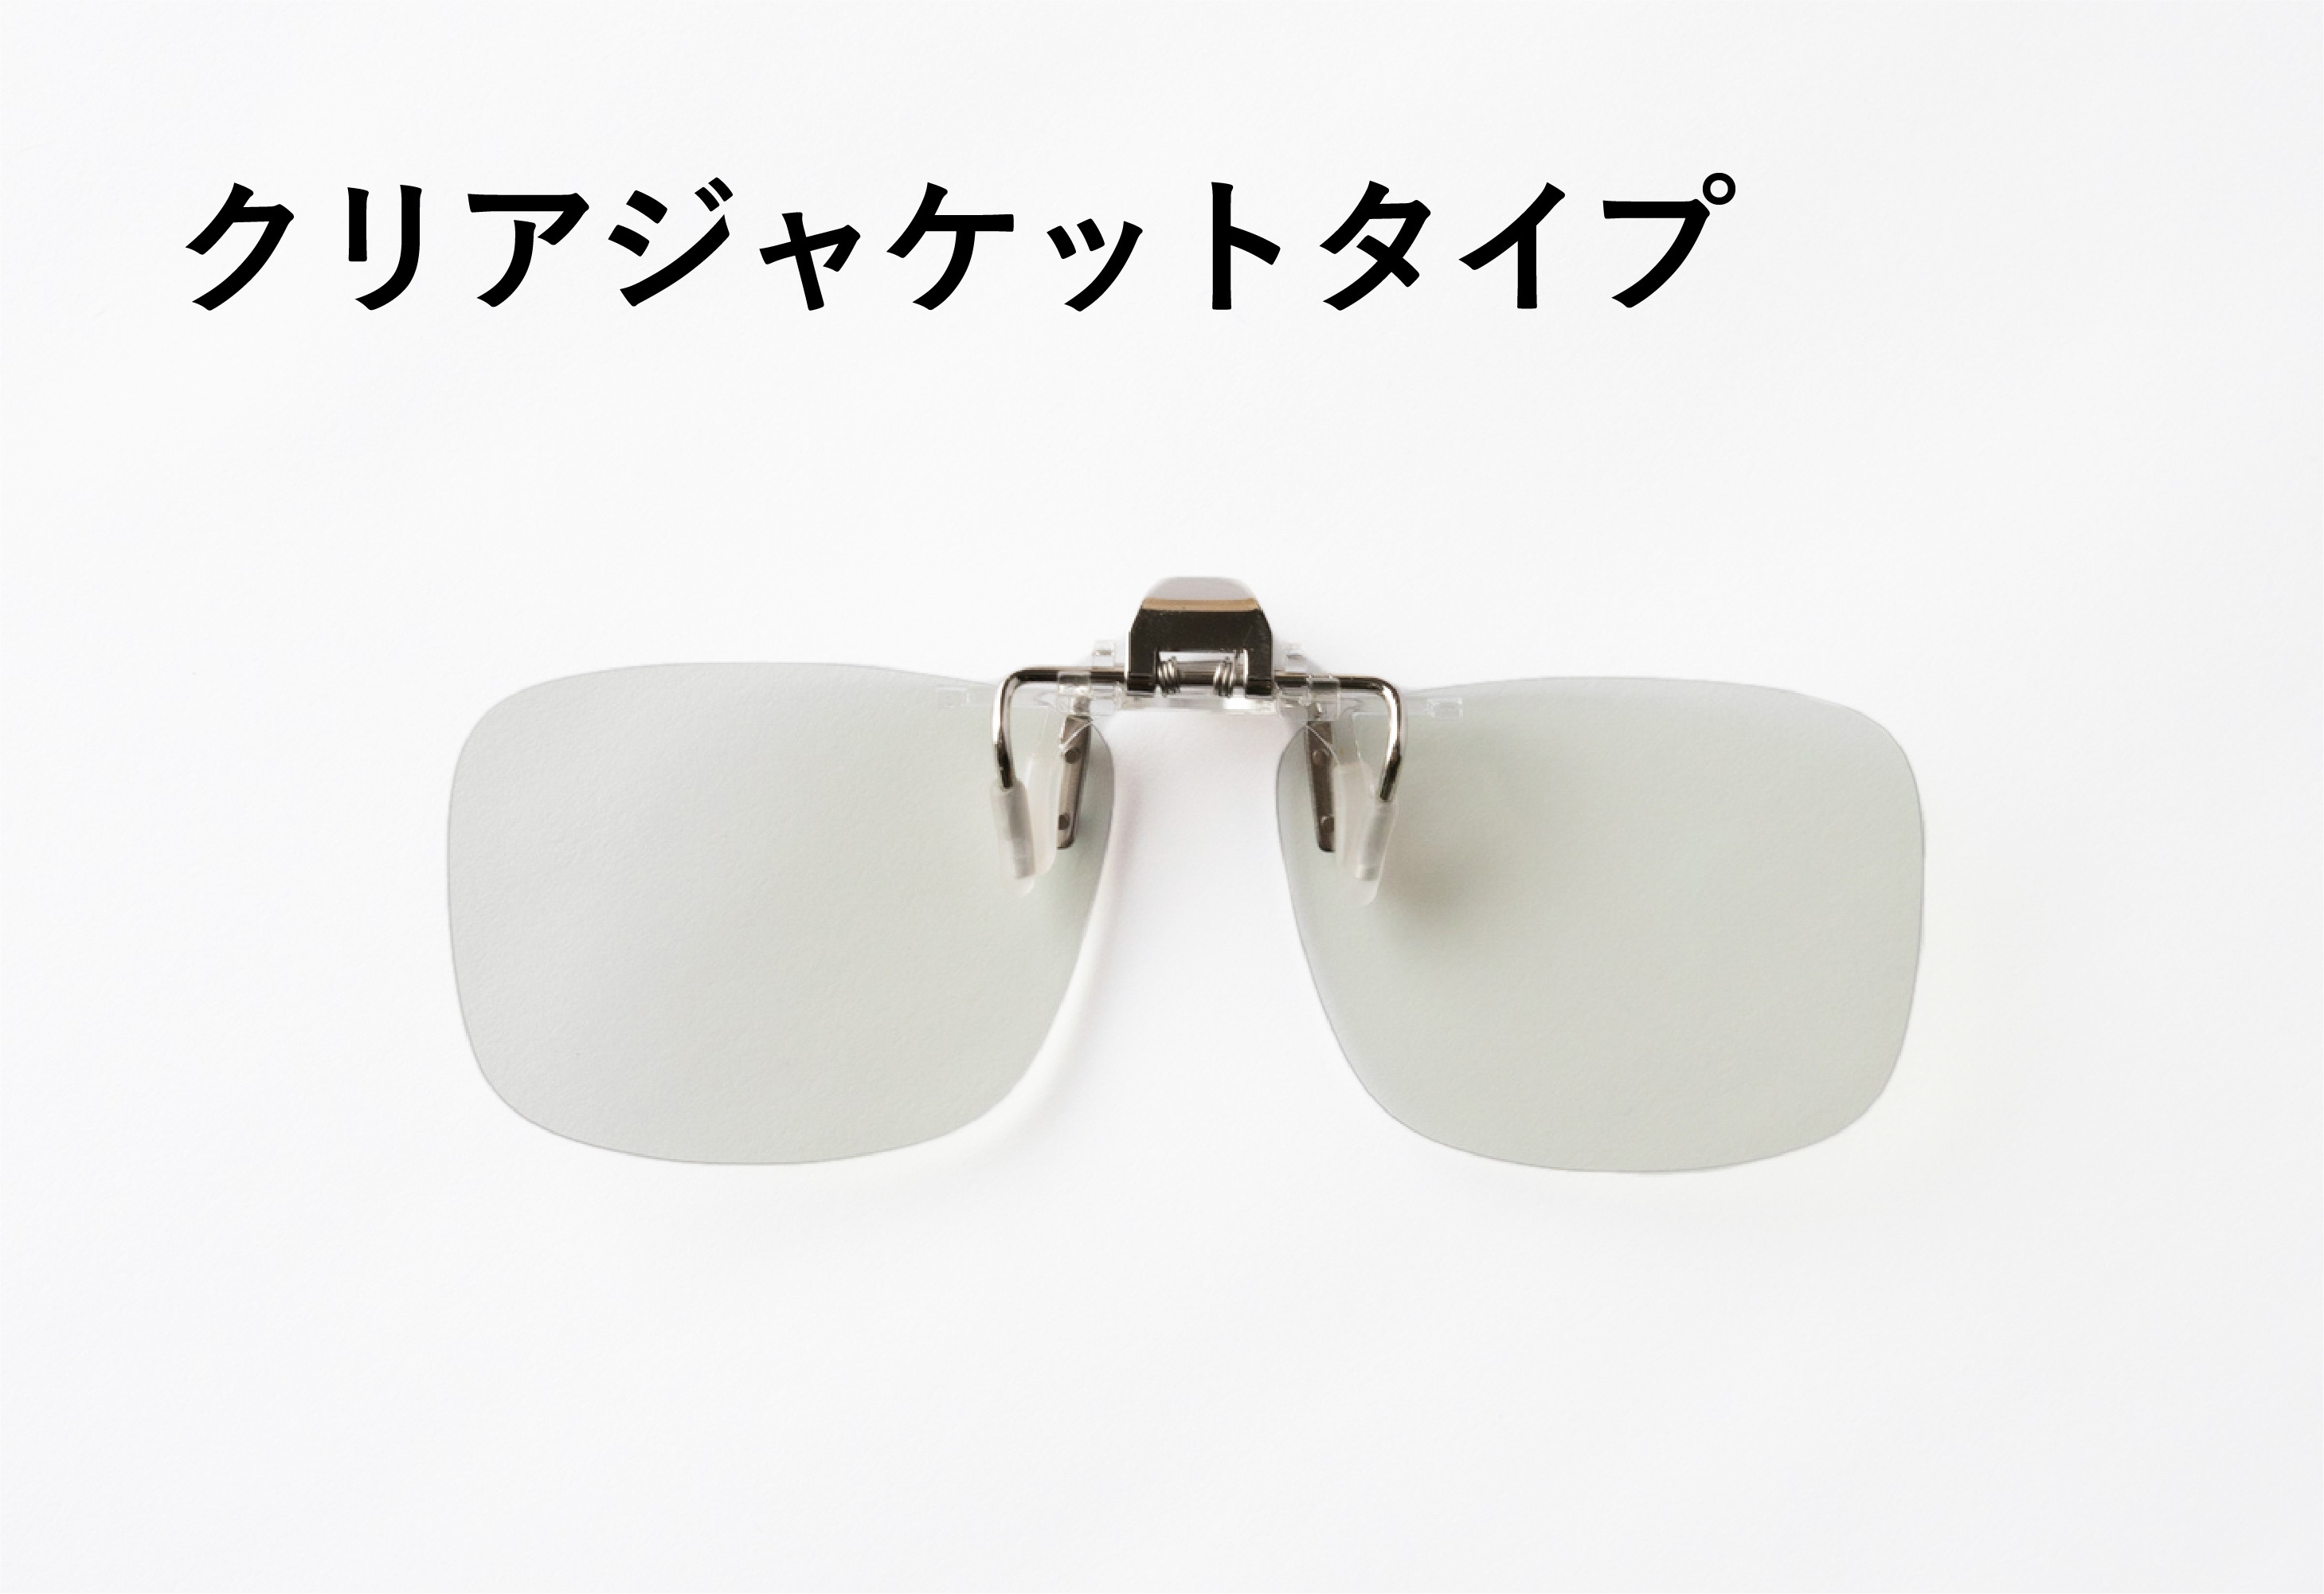 夜専用メガネ「ナイトグラス」を6月25日(金)よりMakuakeにて先行販売 ...